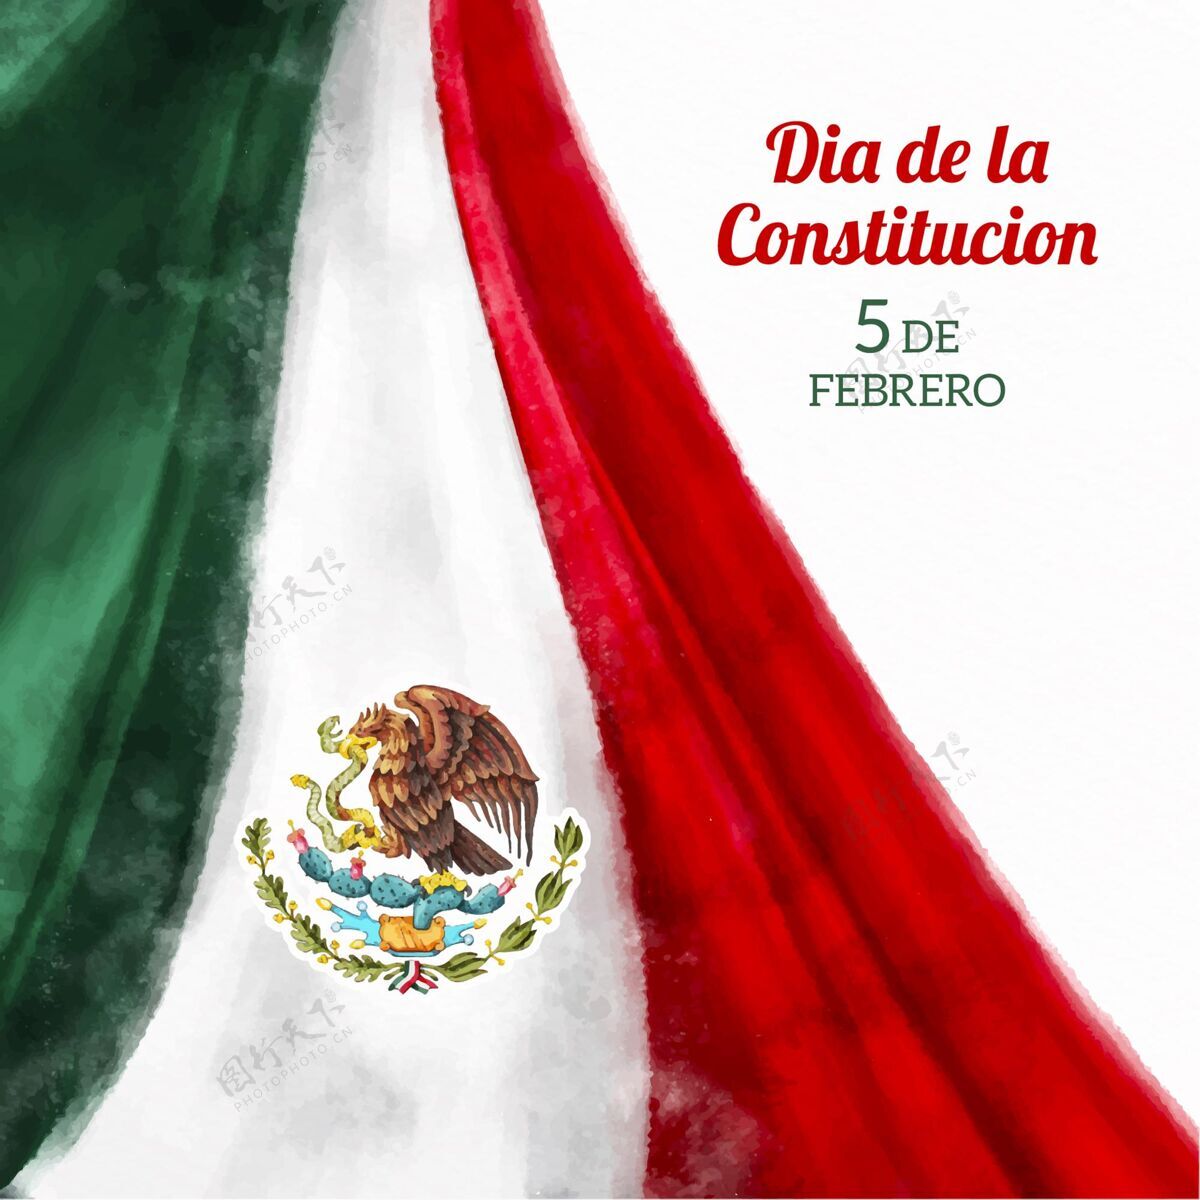 民主戴着水彩旗的迪娅·德拉康斯特西翁墨西哥宪法国家